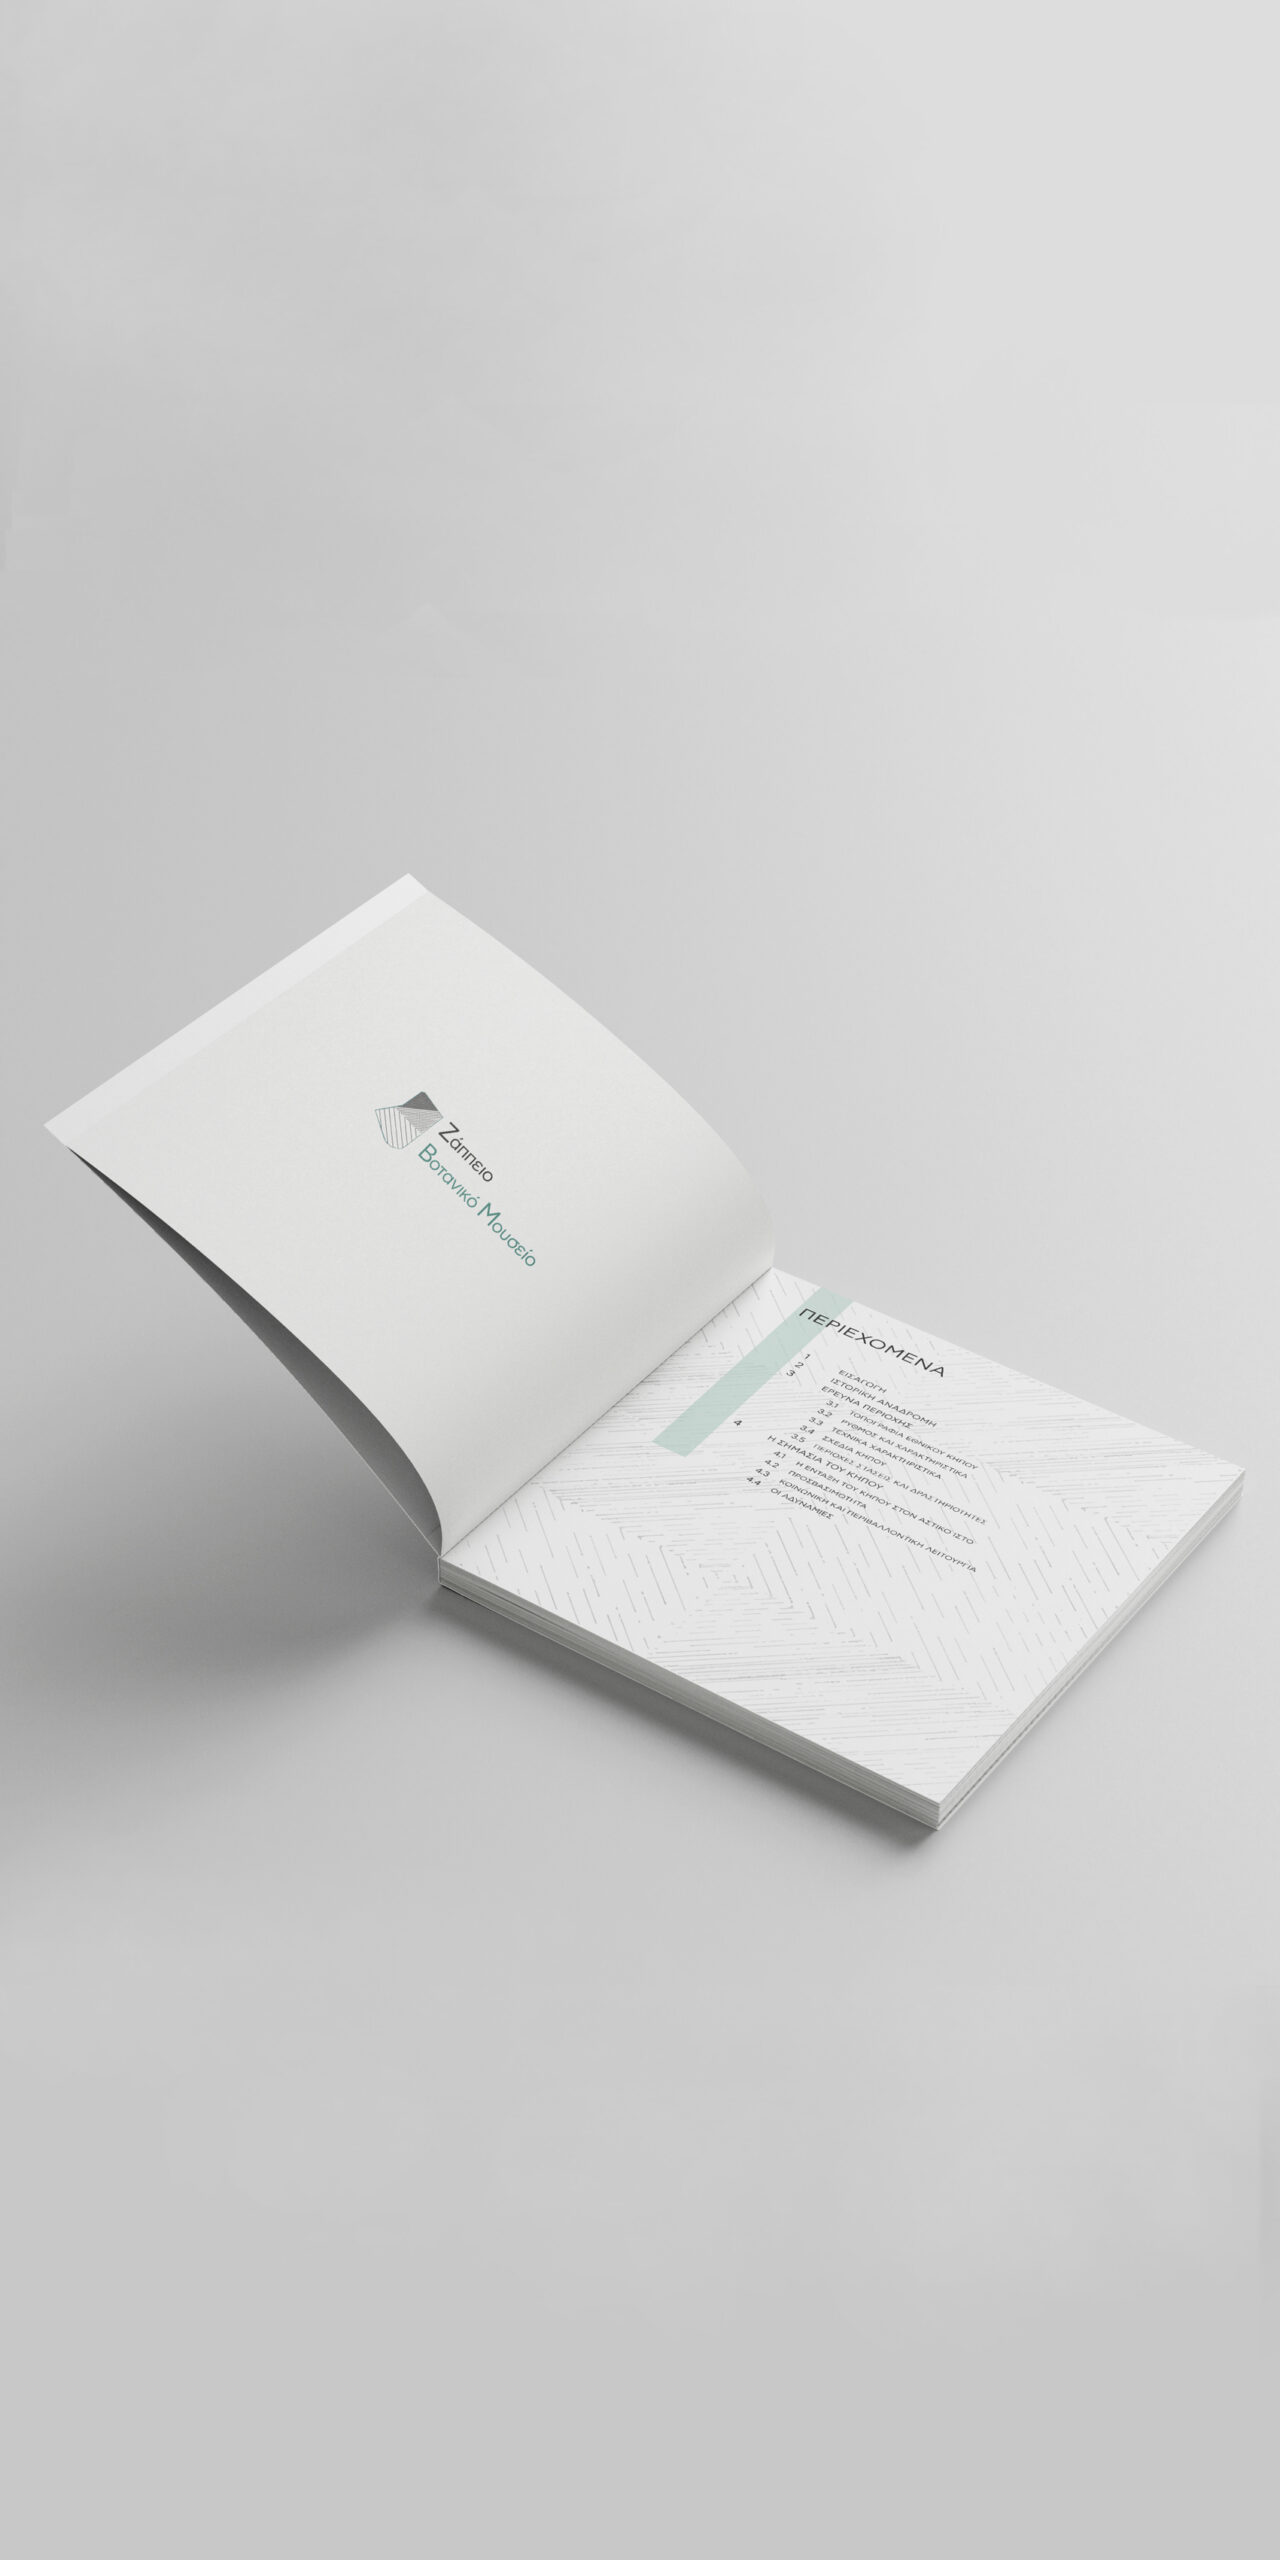 3-book-design-page-ethnikos-kipos-zappeio-graphic-text